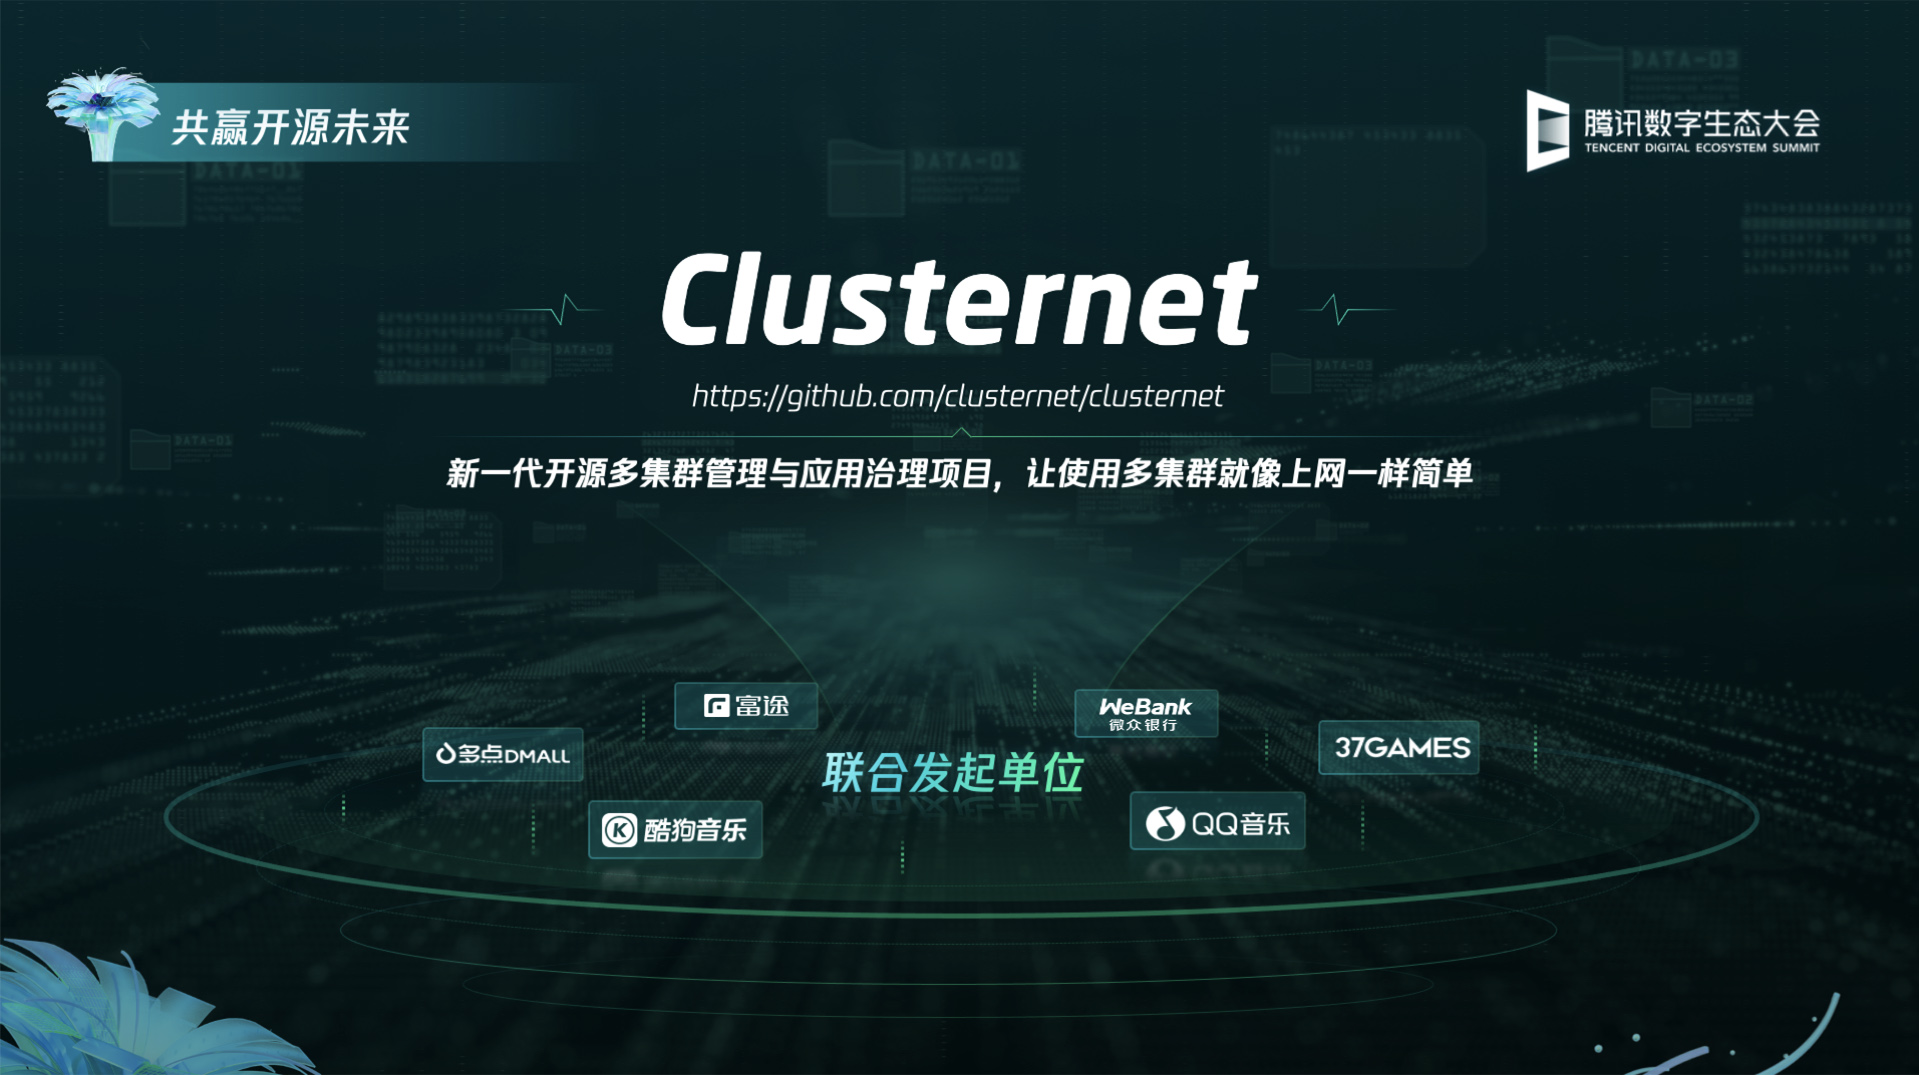 腾讯发布 K8s 多集群管理开源项目 Clusternet